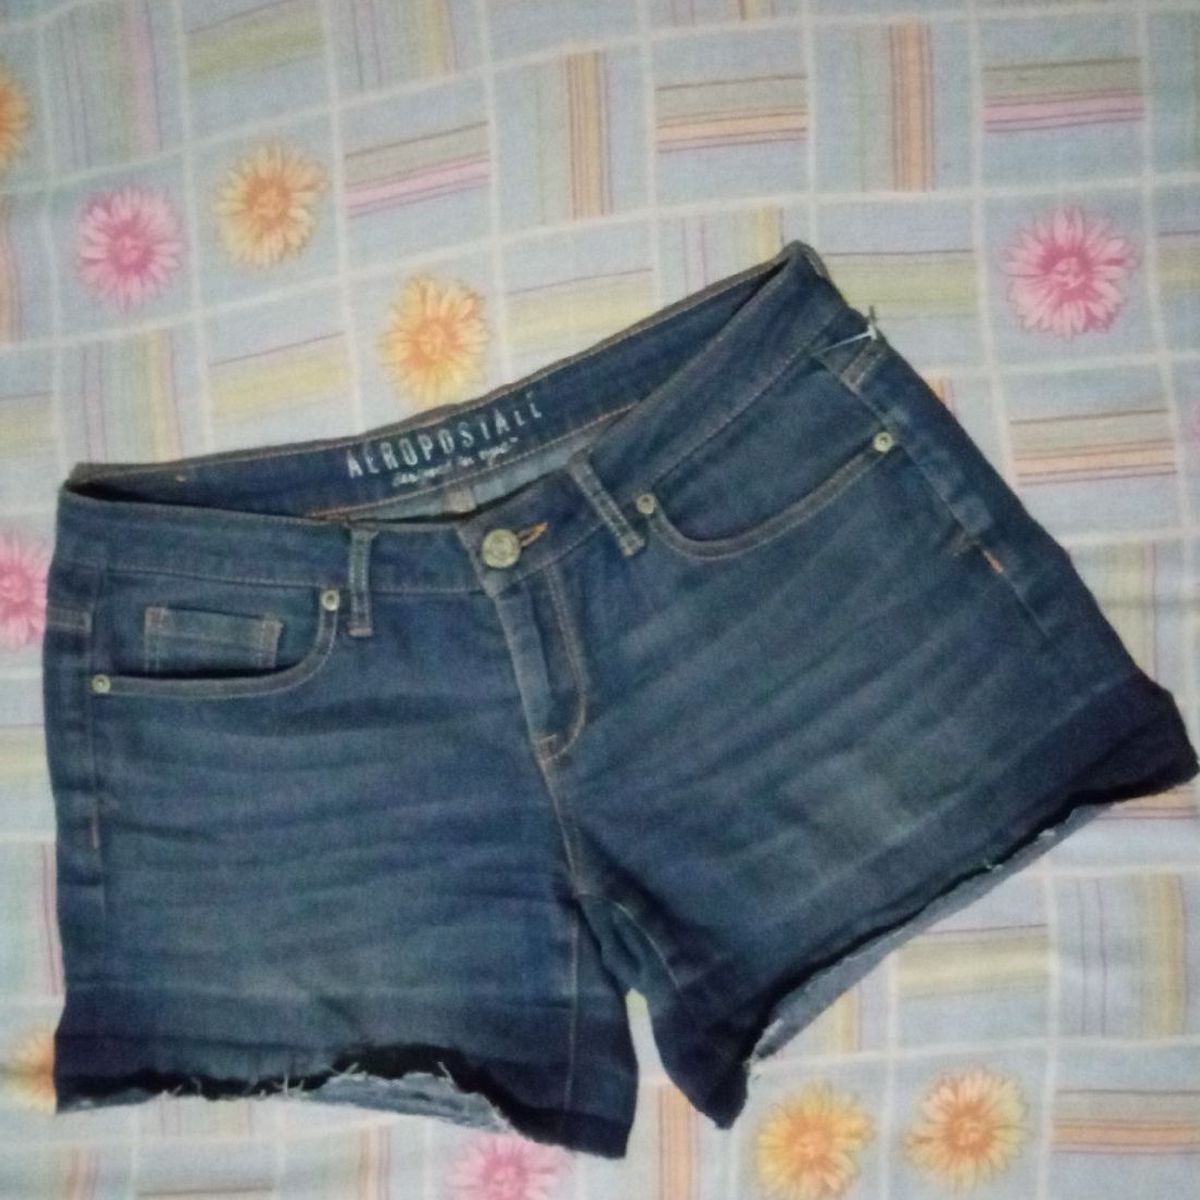 Shorts Jeans Fem Aeropostale Vintage - Compre Online